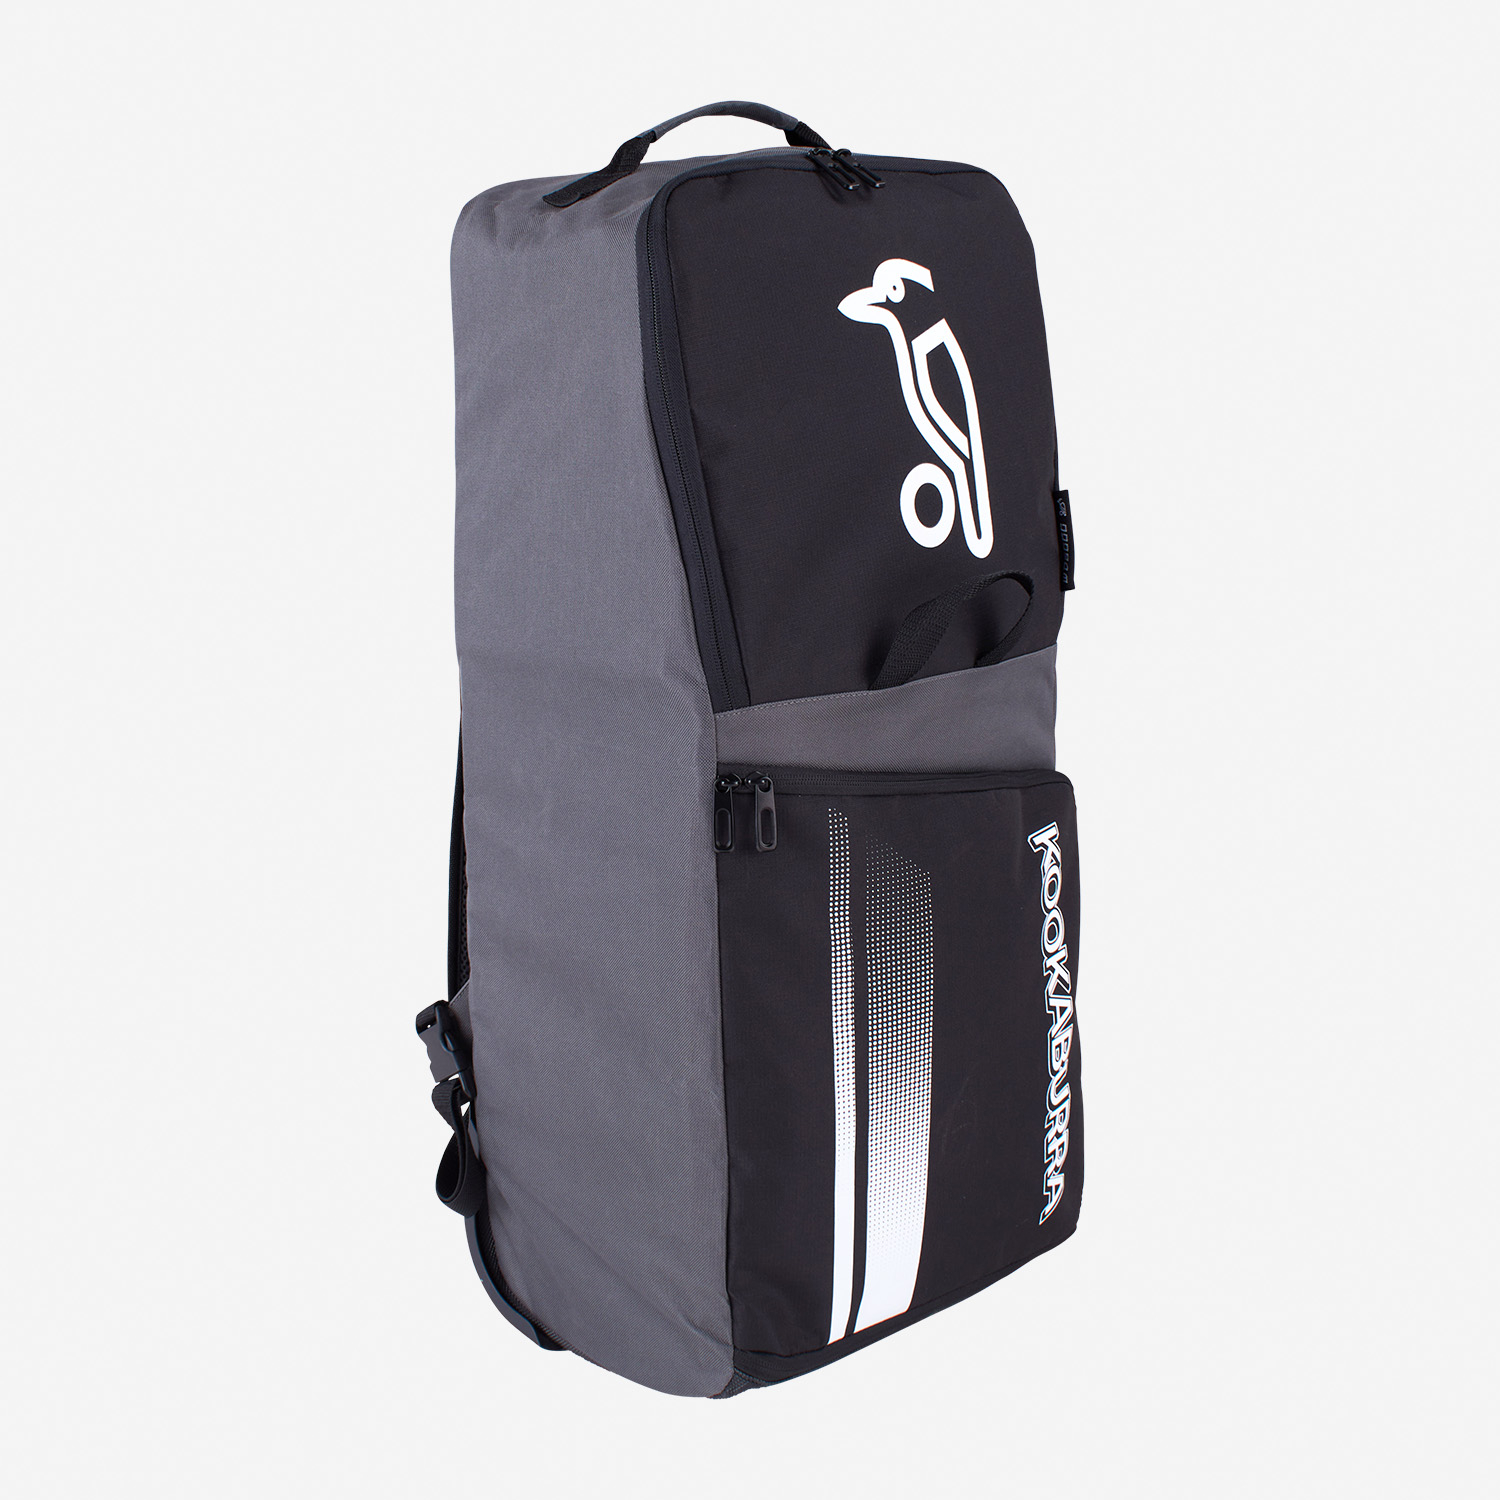  Kookaburra WD6000 Cricket Wheelie Duffle Bag